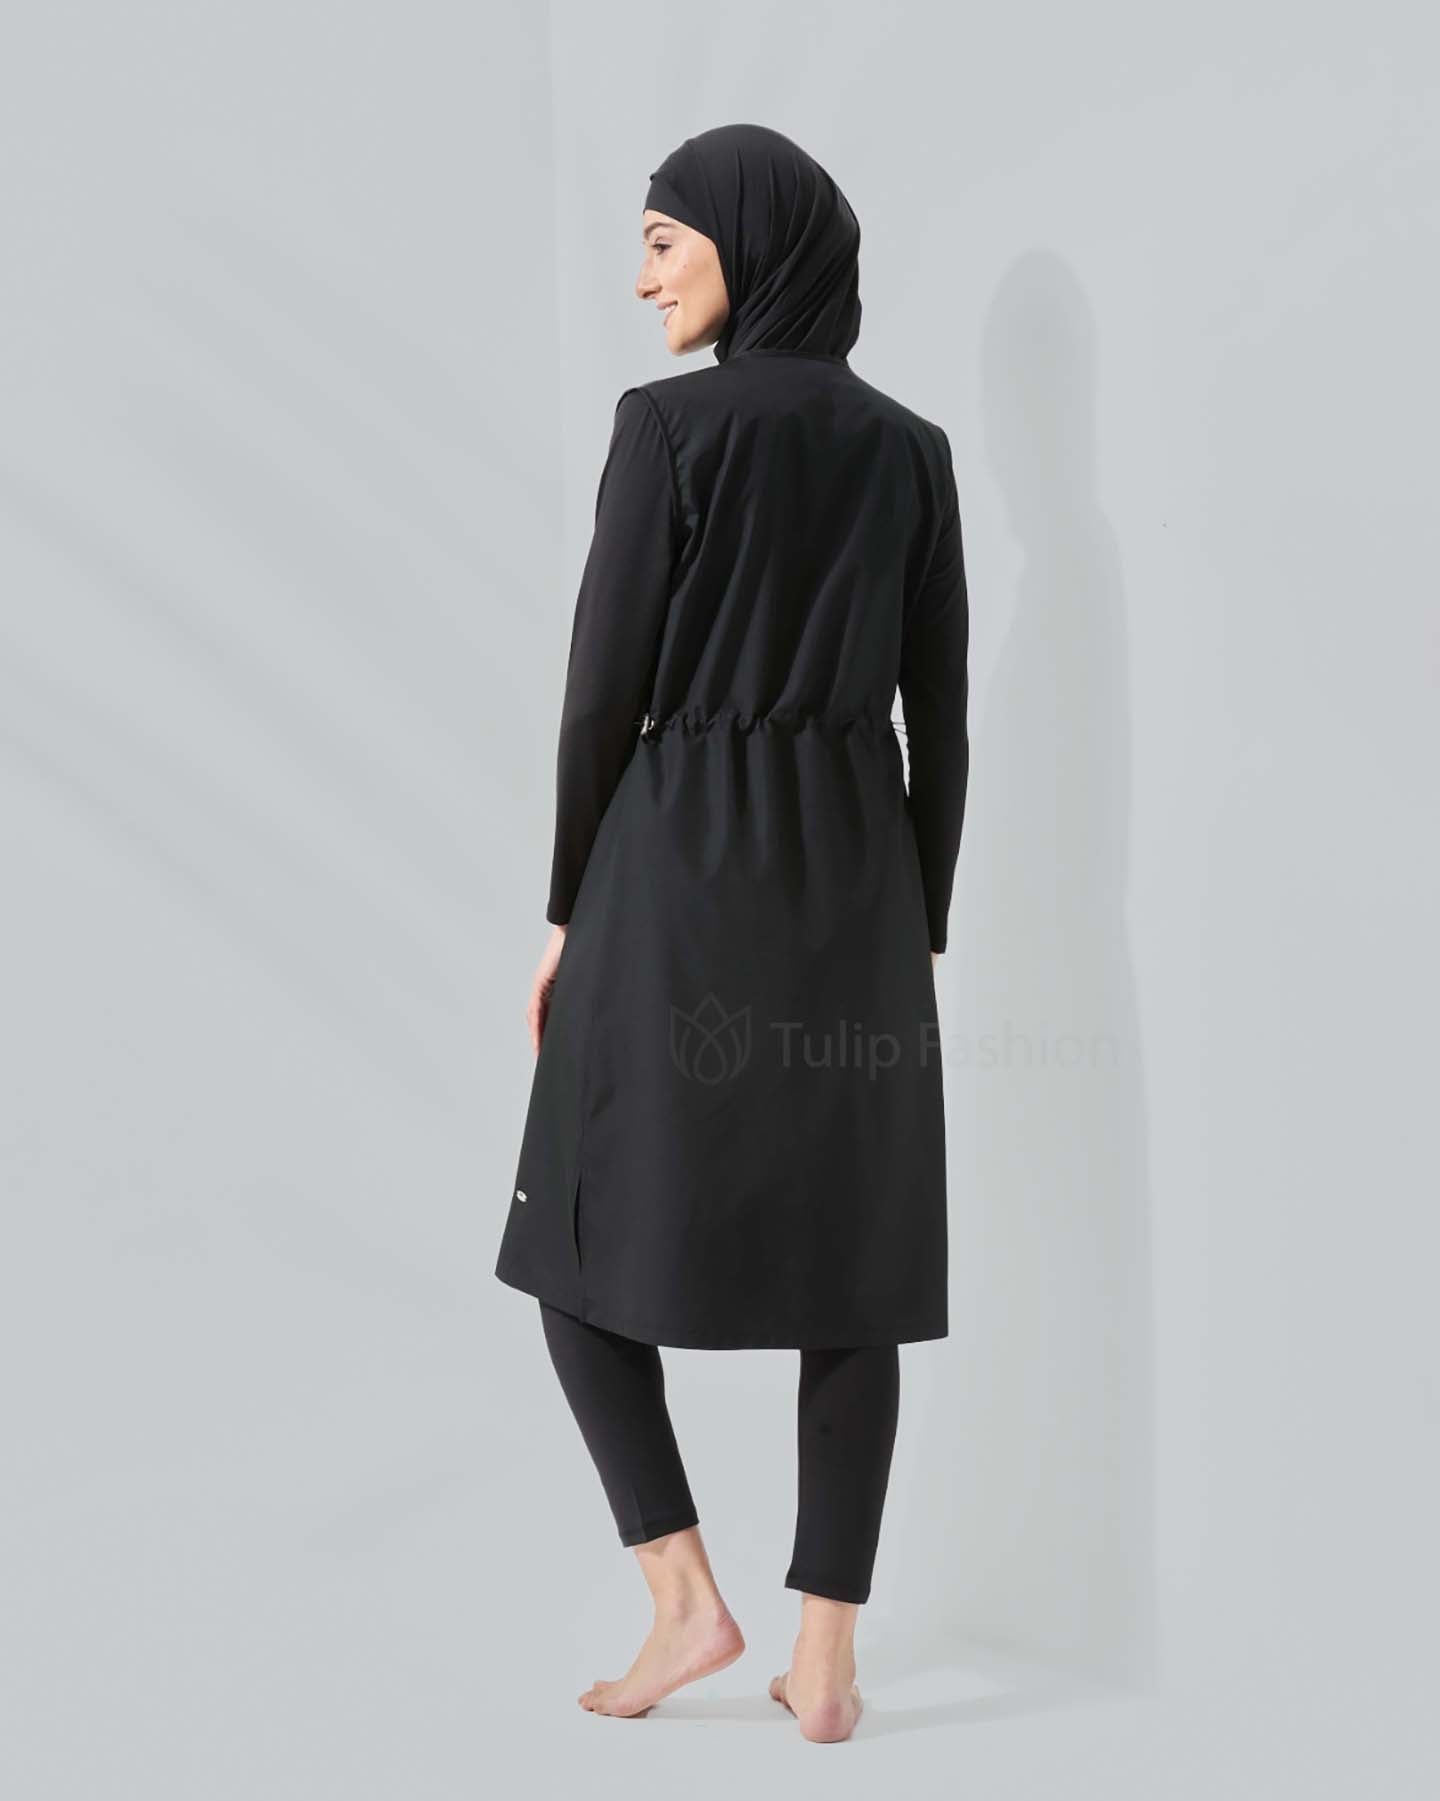 Muslim Swimsuit with hijab - Mora - Black